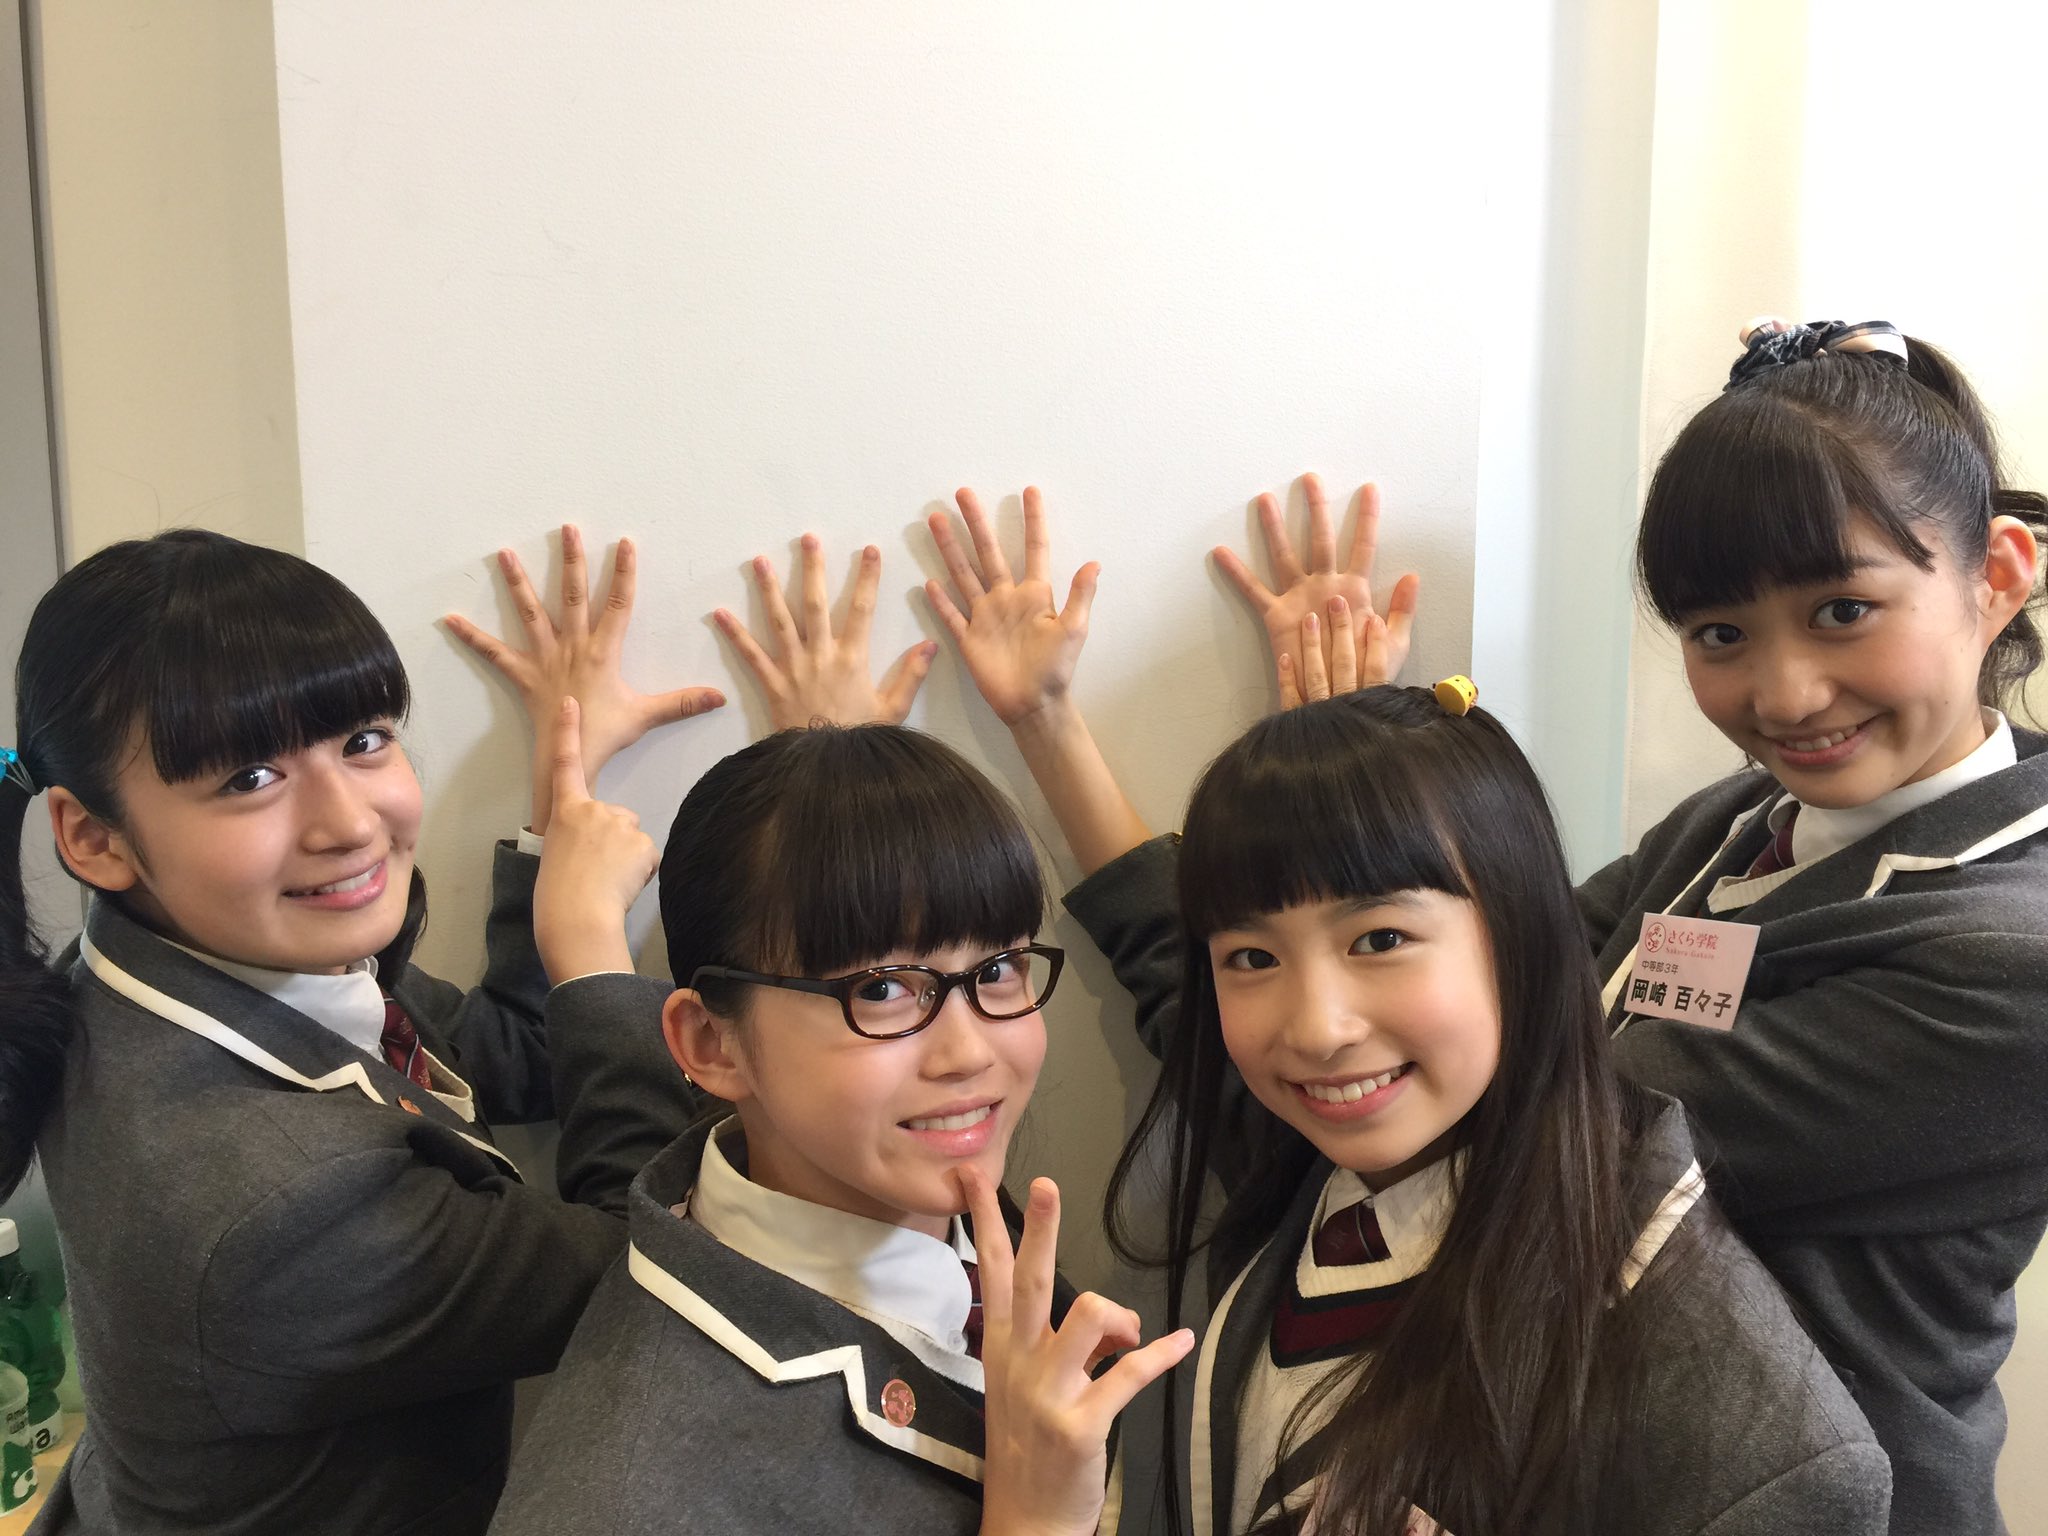 Sakura Gakuin Staff : Sakura Gakuin | さくら学院職員室 : さくら学院